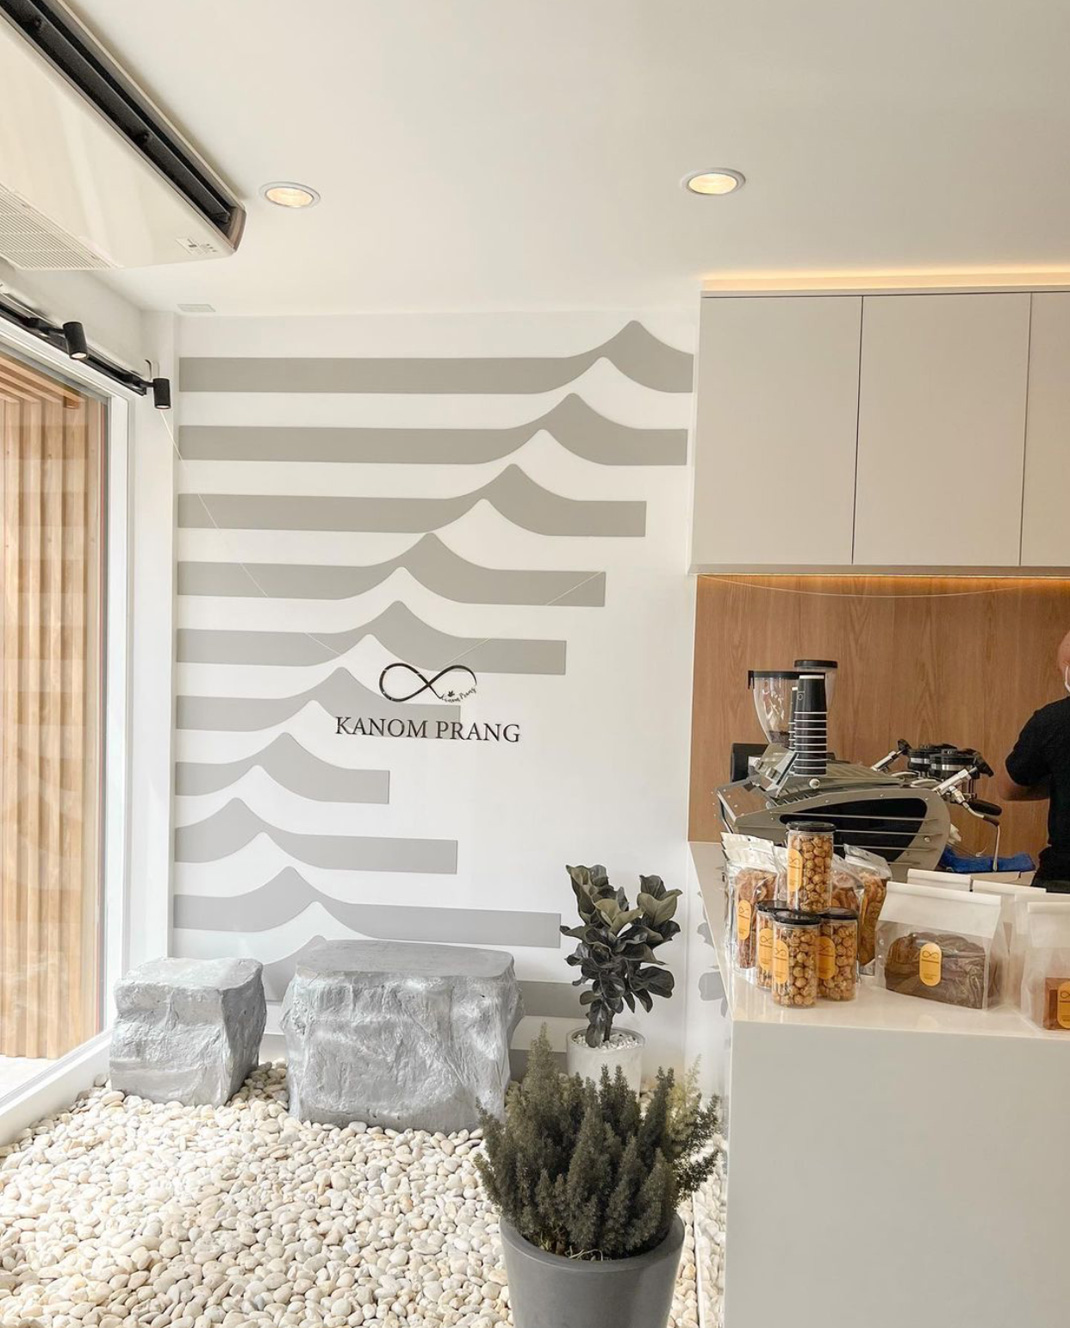 面包店Kanomprang 泰国 曼谷 面包店 白色 木色 logo设计 vi设计 空间设计